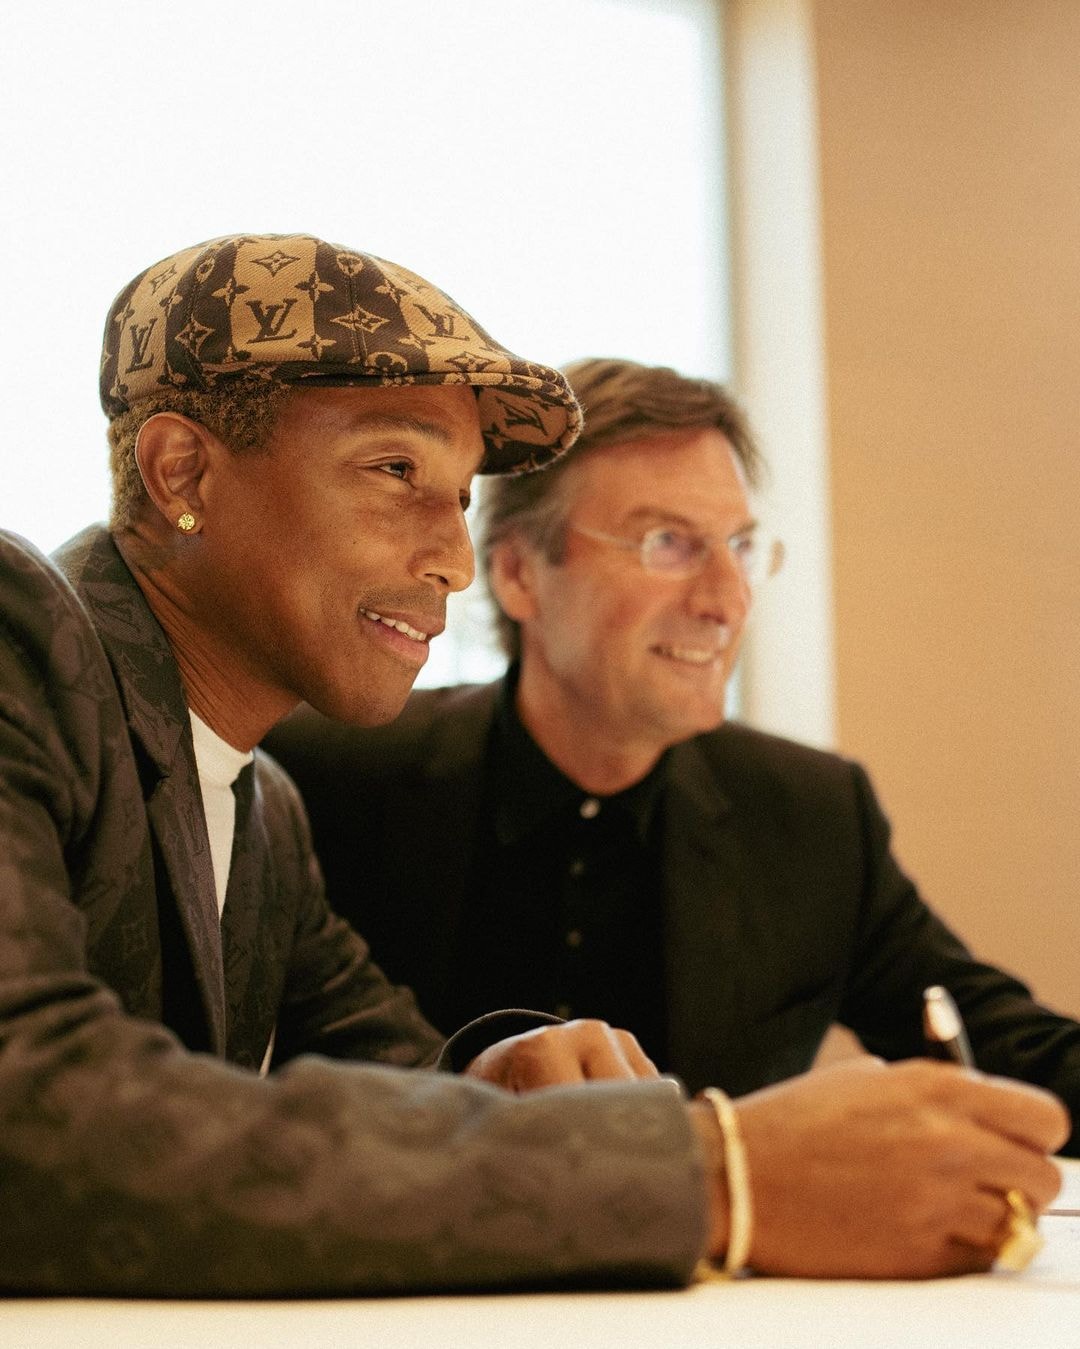 解读 Pharrell Williams 超越时尚的创意视野、影响力与圈层资源